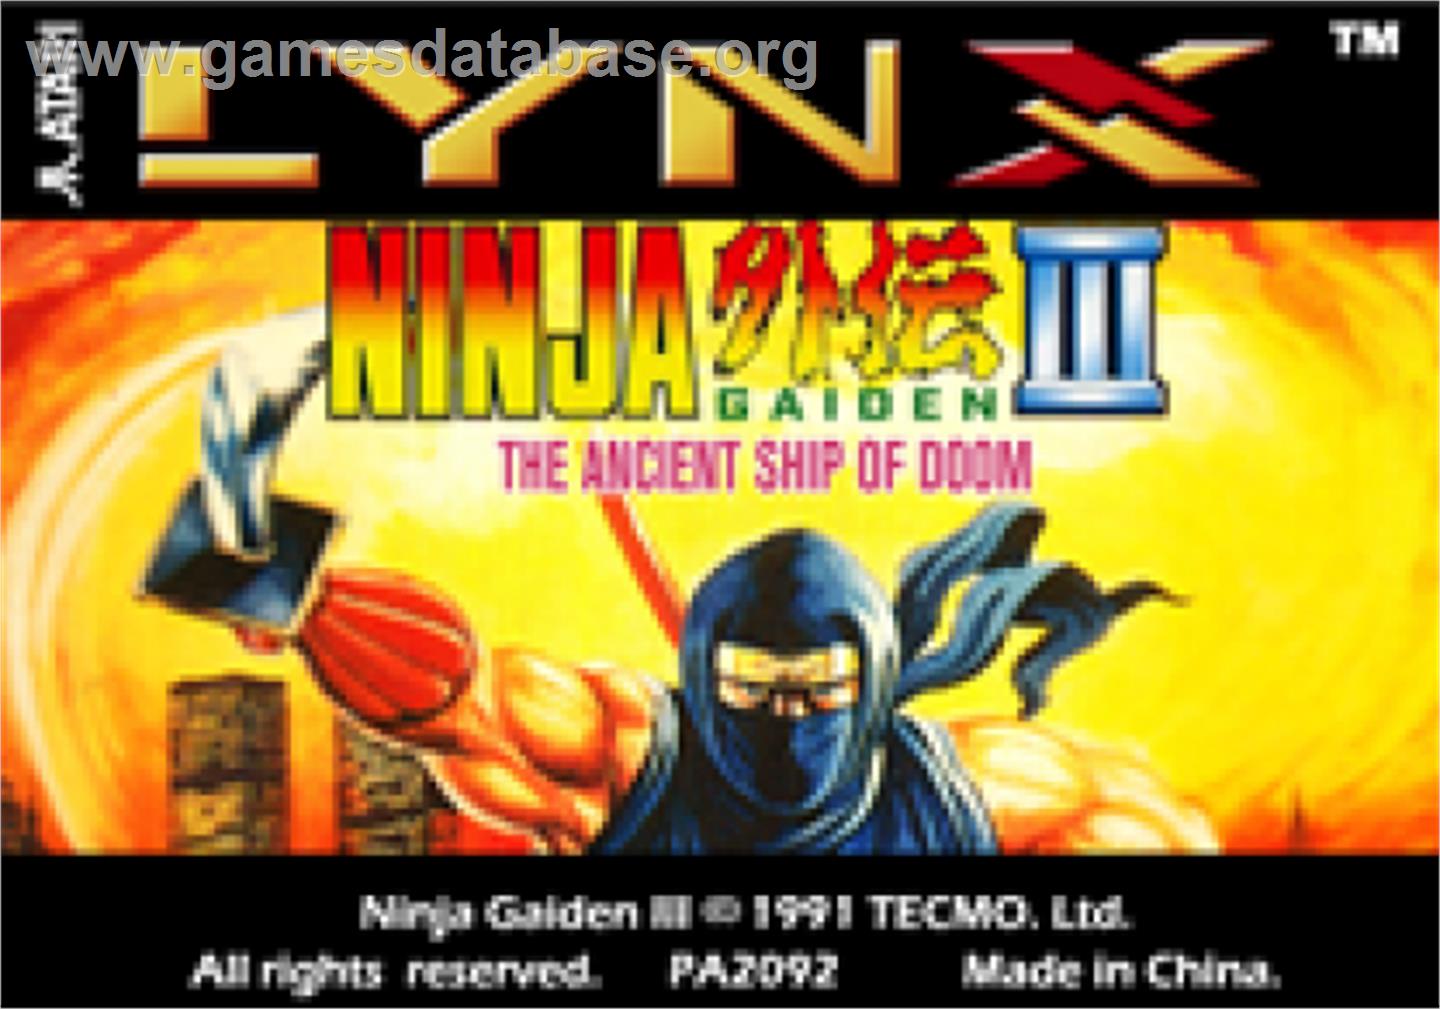 Ninja Gaiden III: The Ancient Ship of Doom - Atari Lynx - Artwork - Cartridge Top